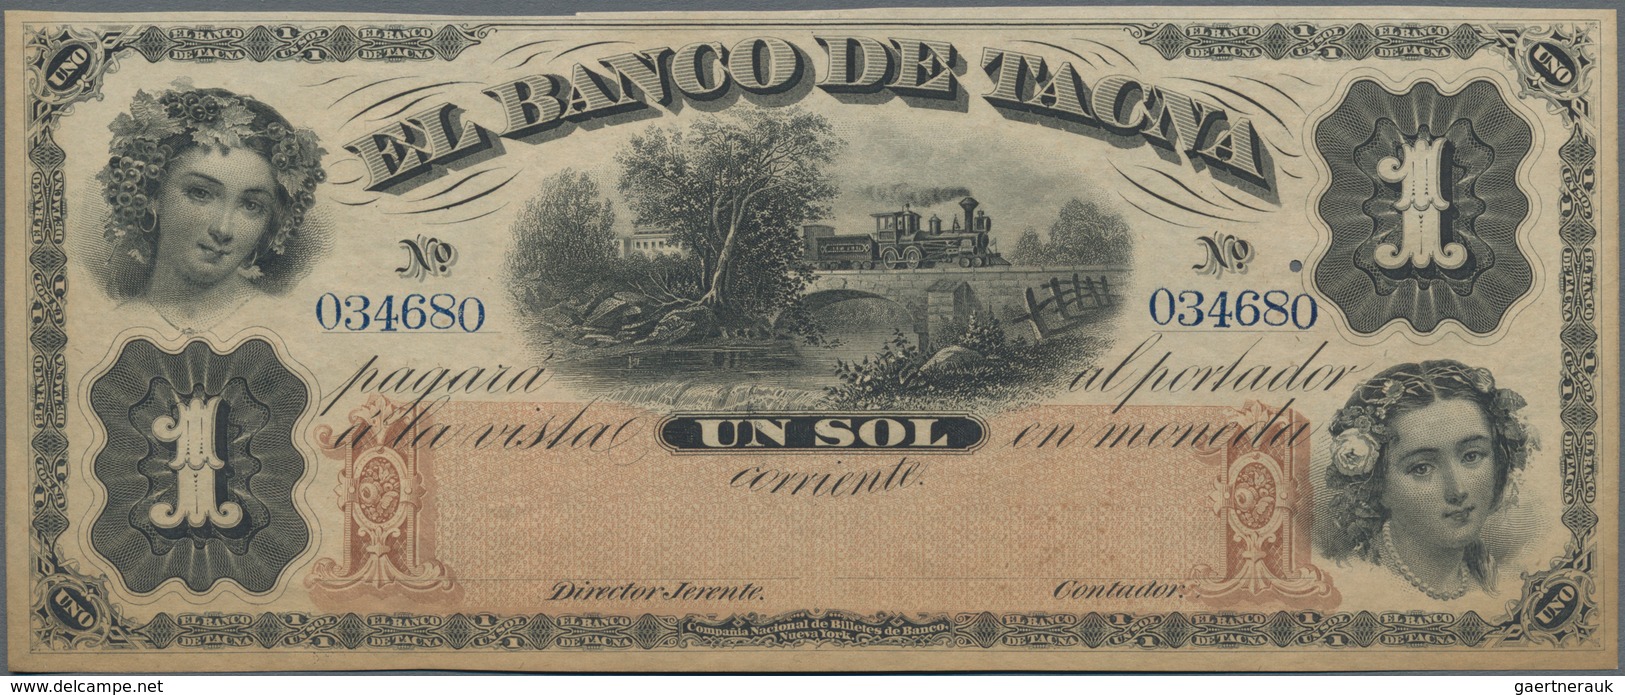 Peru: El Banco De Tacna 1 Sol 1870 Unsigned Remainder, P.S382r In XF+ Condition - Peru